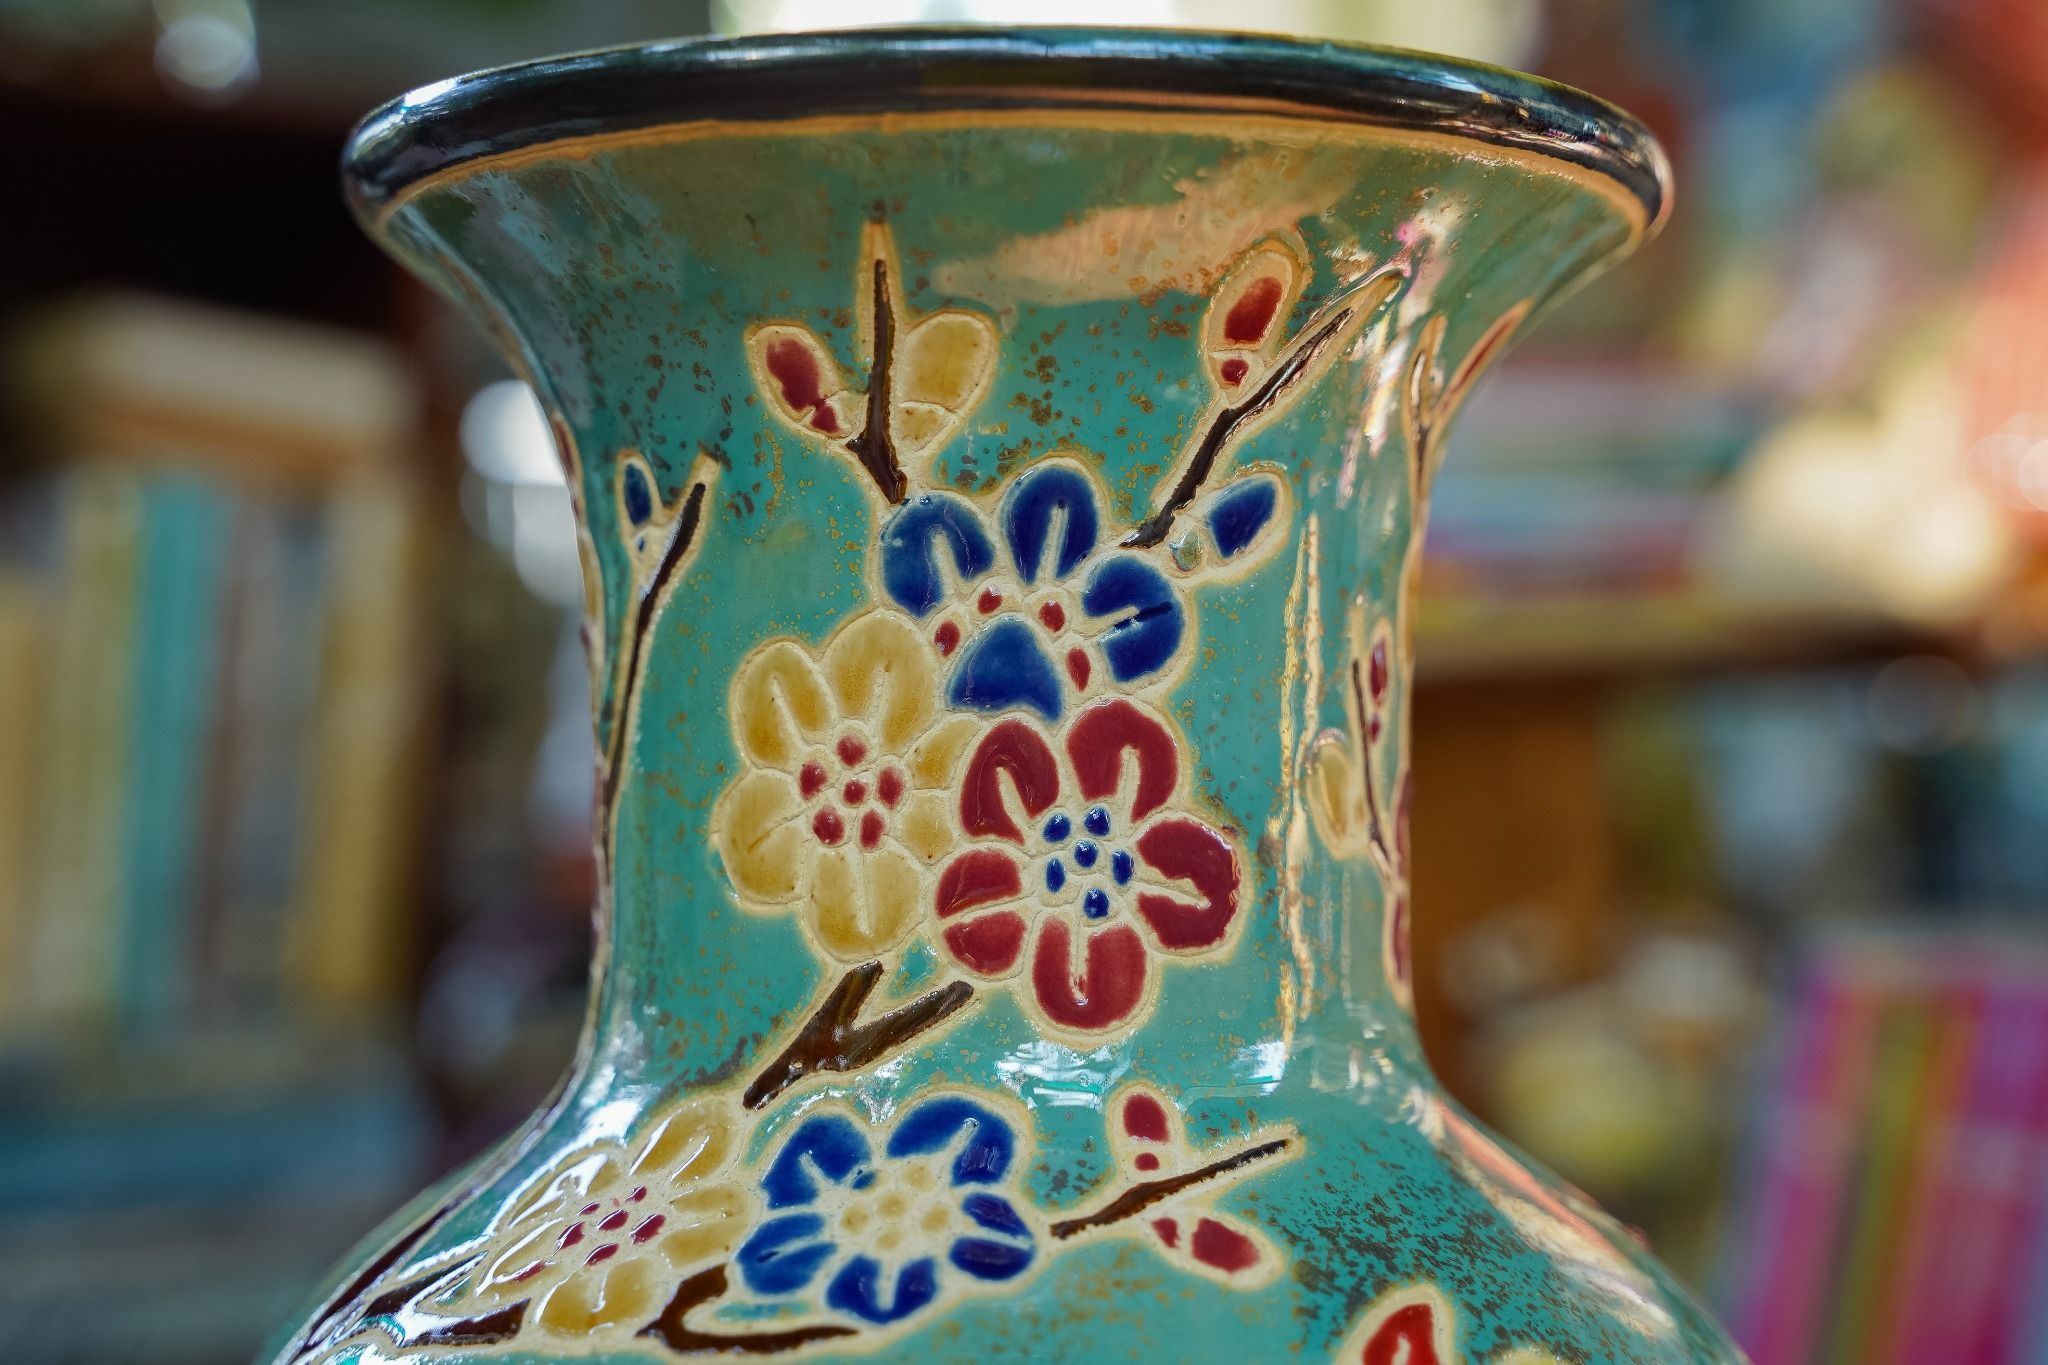  Bình Mai Điểu, hoa mai vàng, xanh đồng trổ bông, gốm mỹ nghệ Nam Bộ, C40 cm 